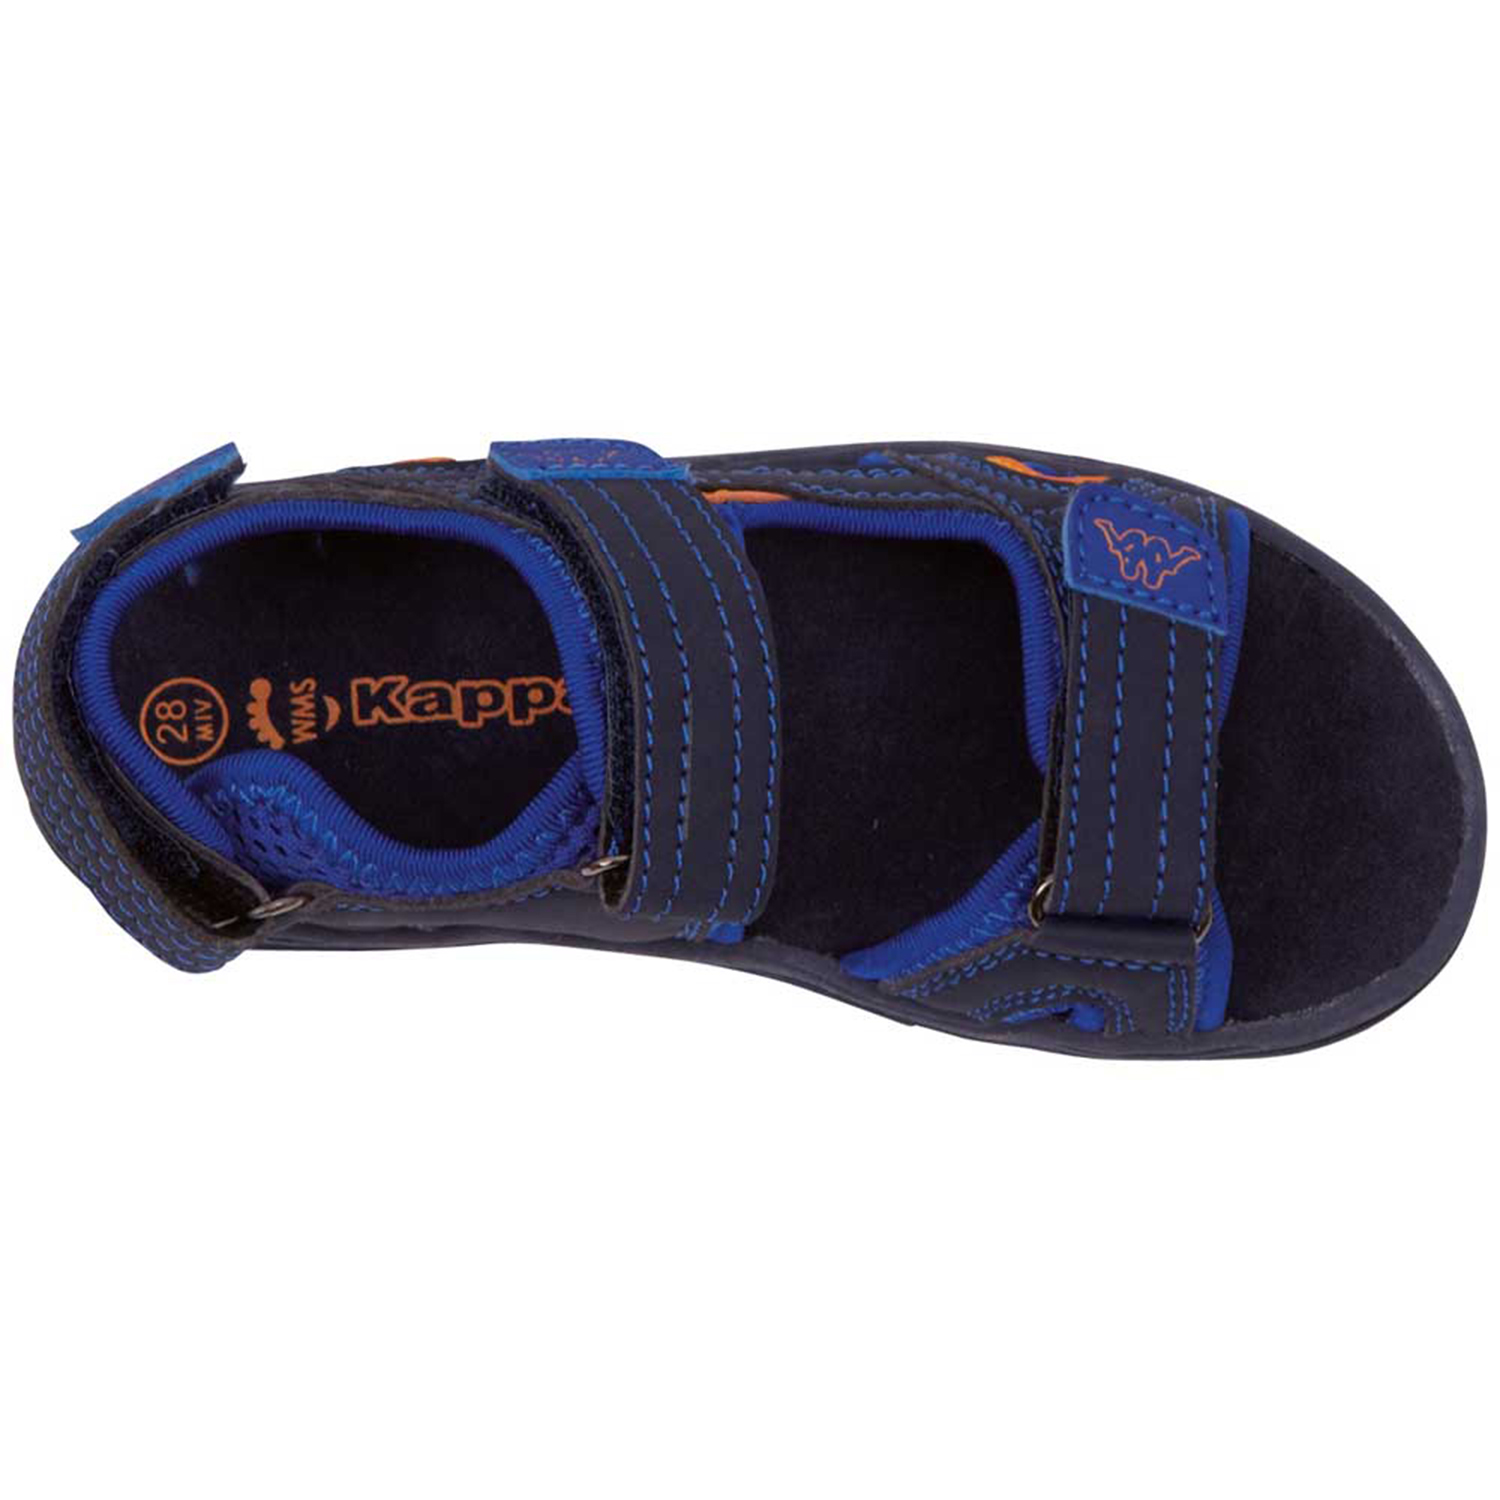 Kappa Unisex Kinder Sandale Schuhe 260373